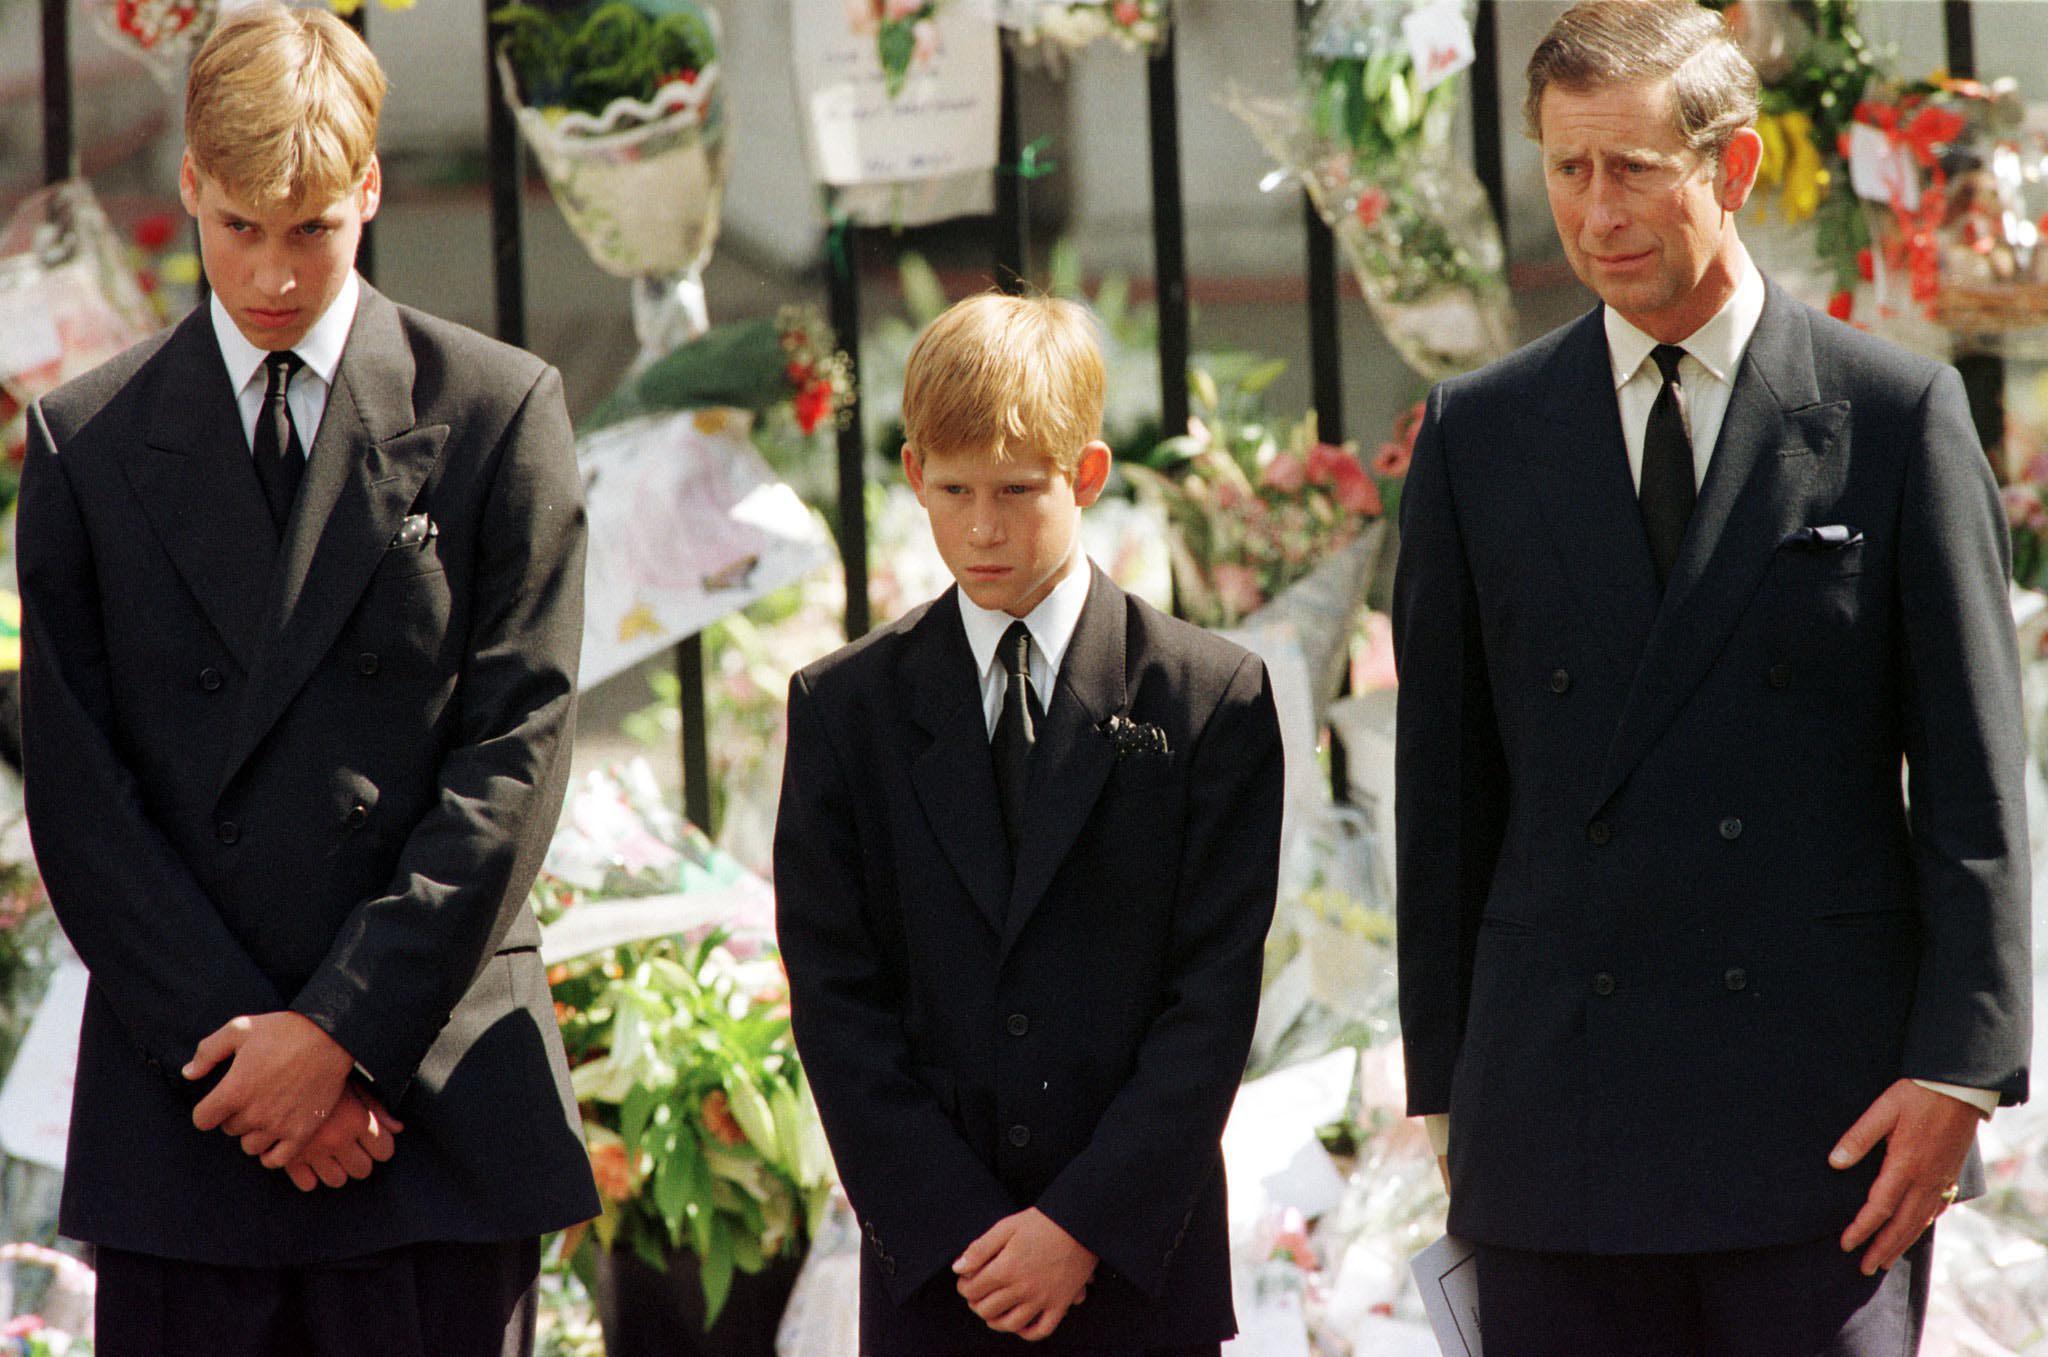 Prince Harry on Diana’s death: ‘I cried once’